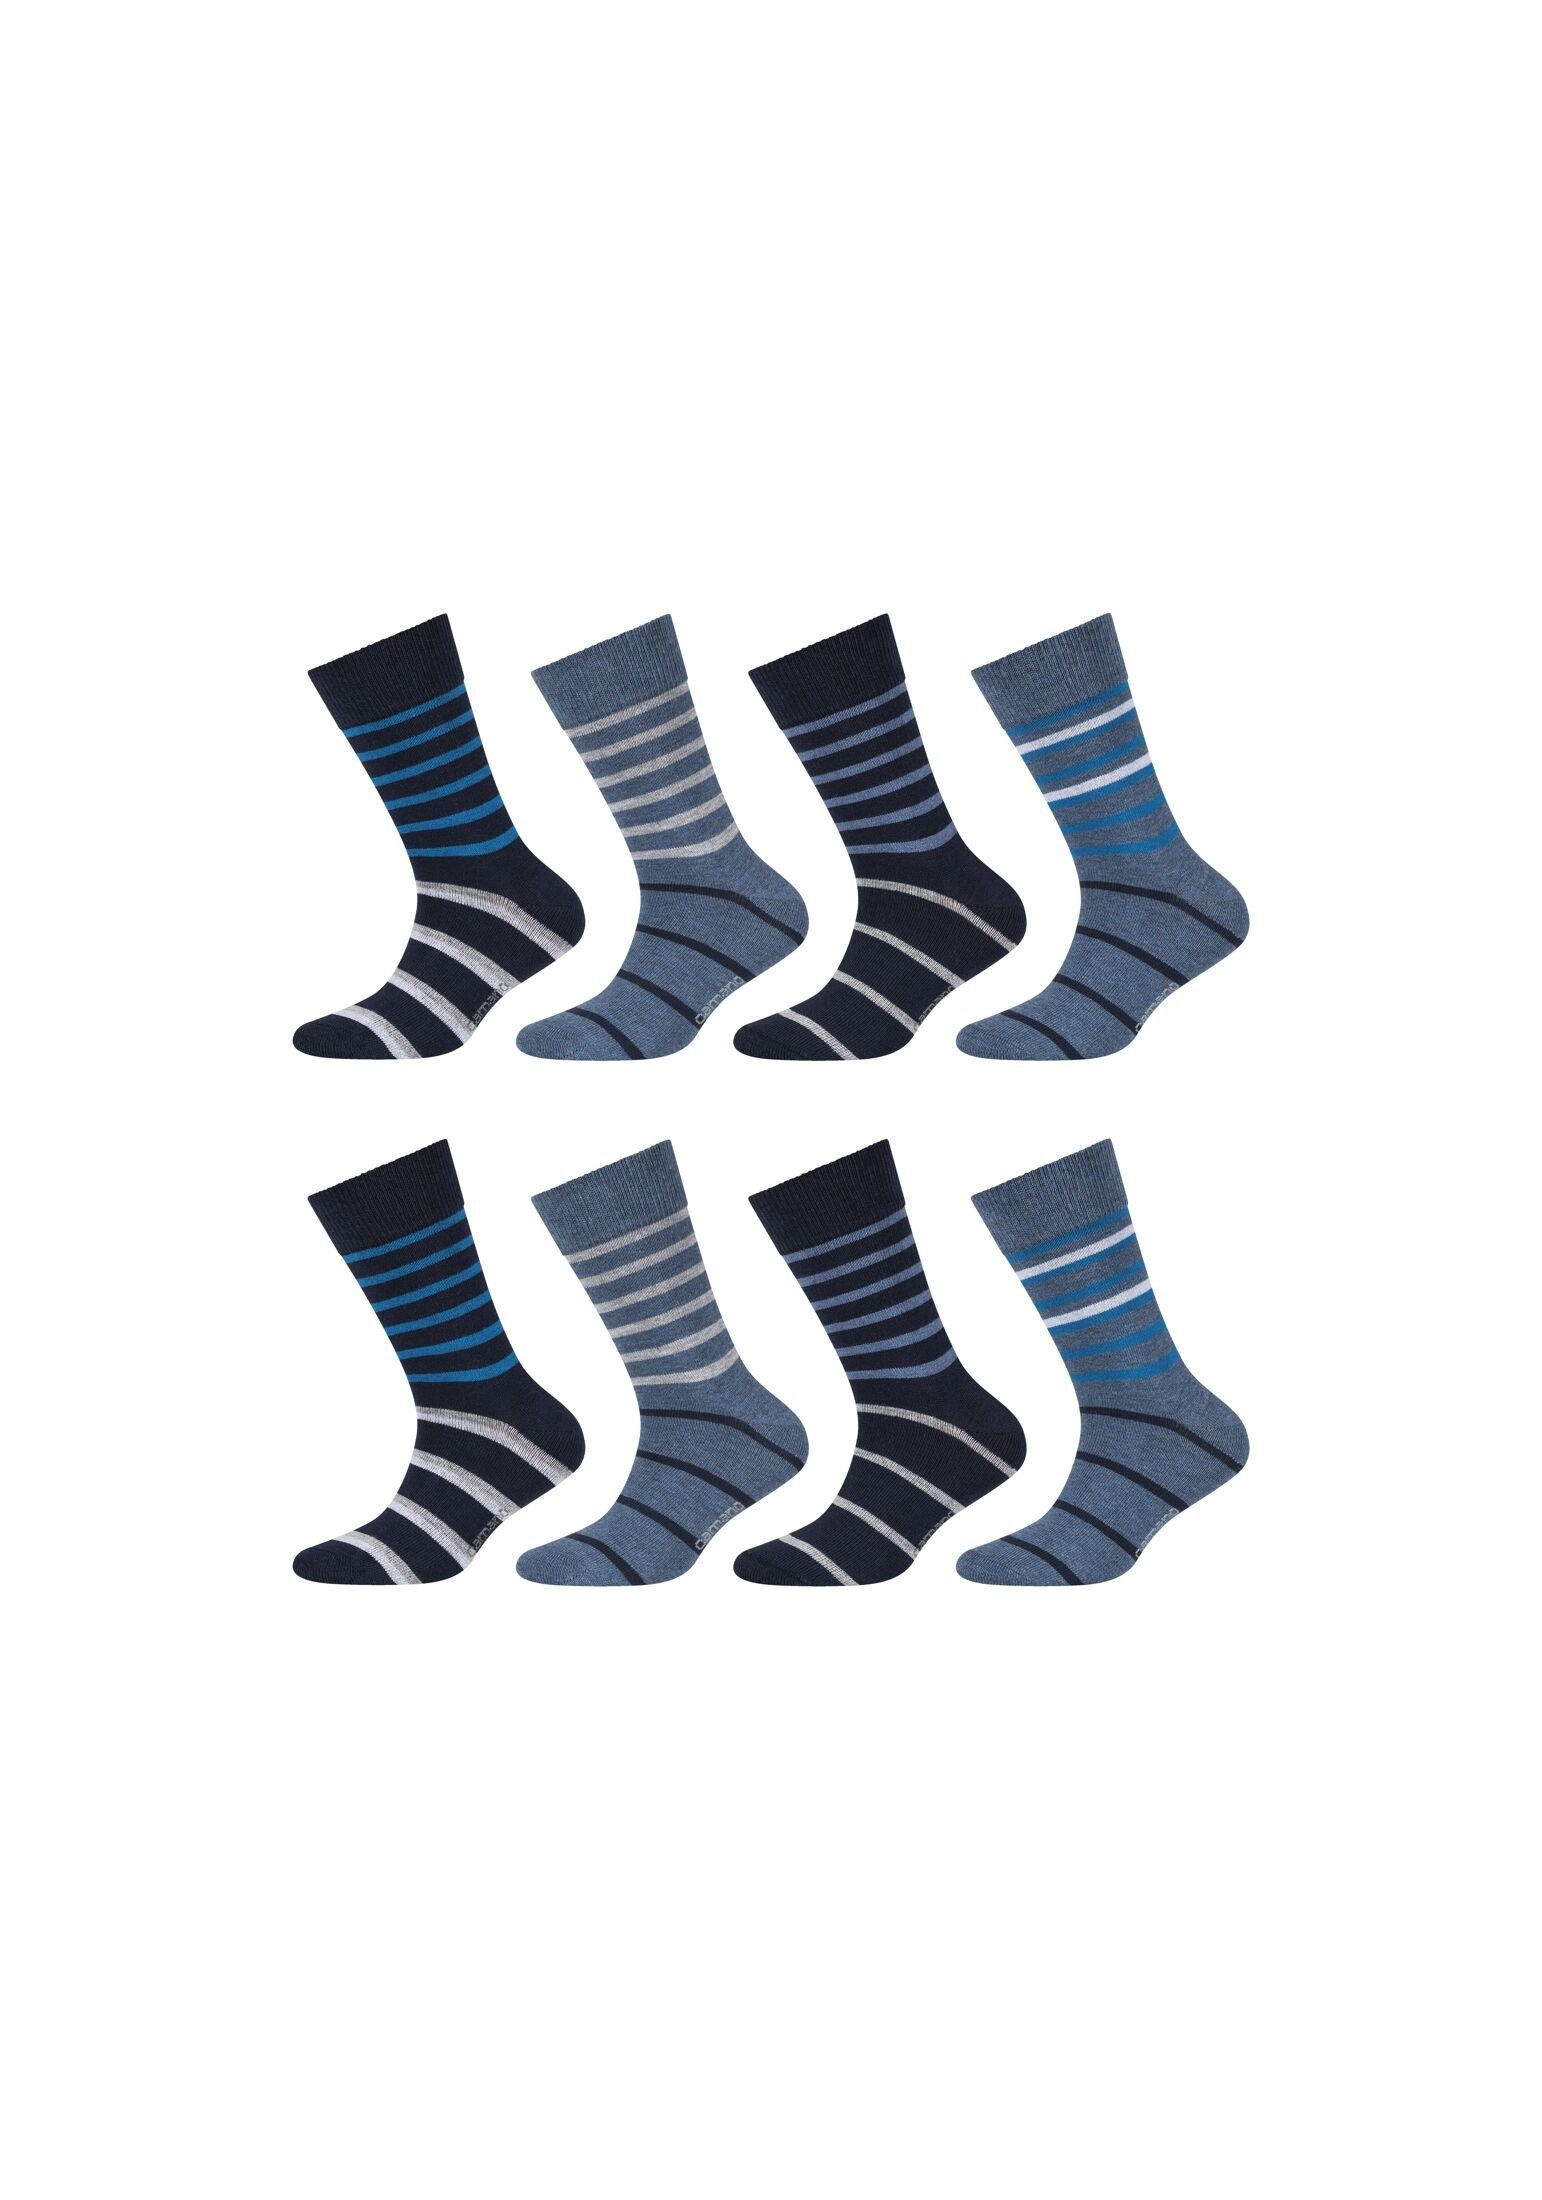 Camano Socken blue Pack 8er Socken